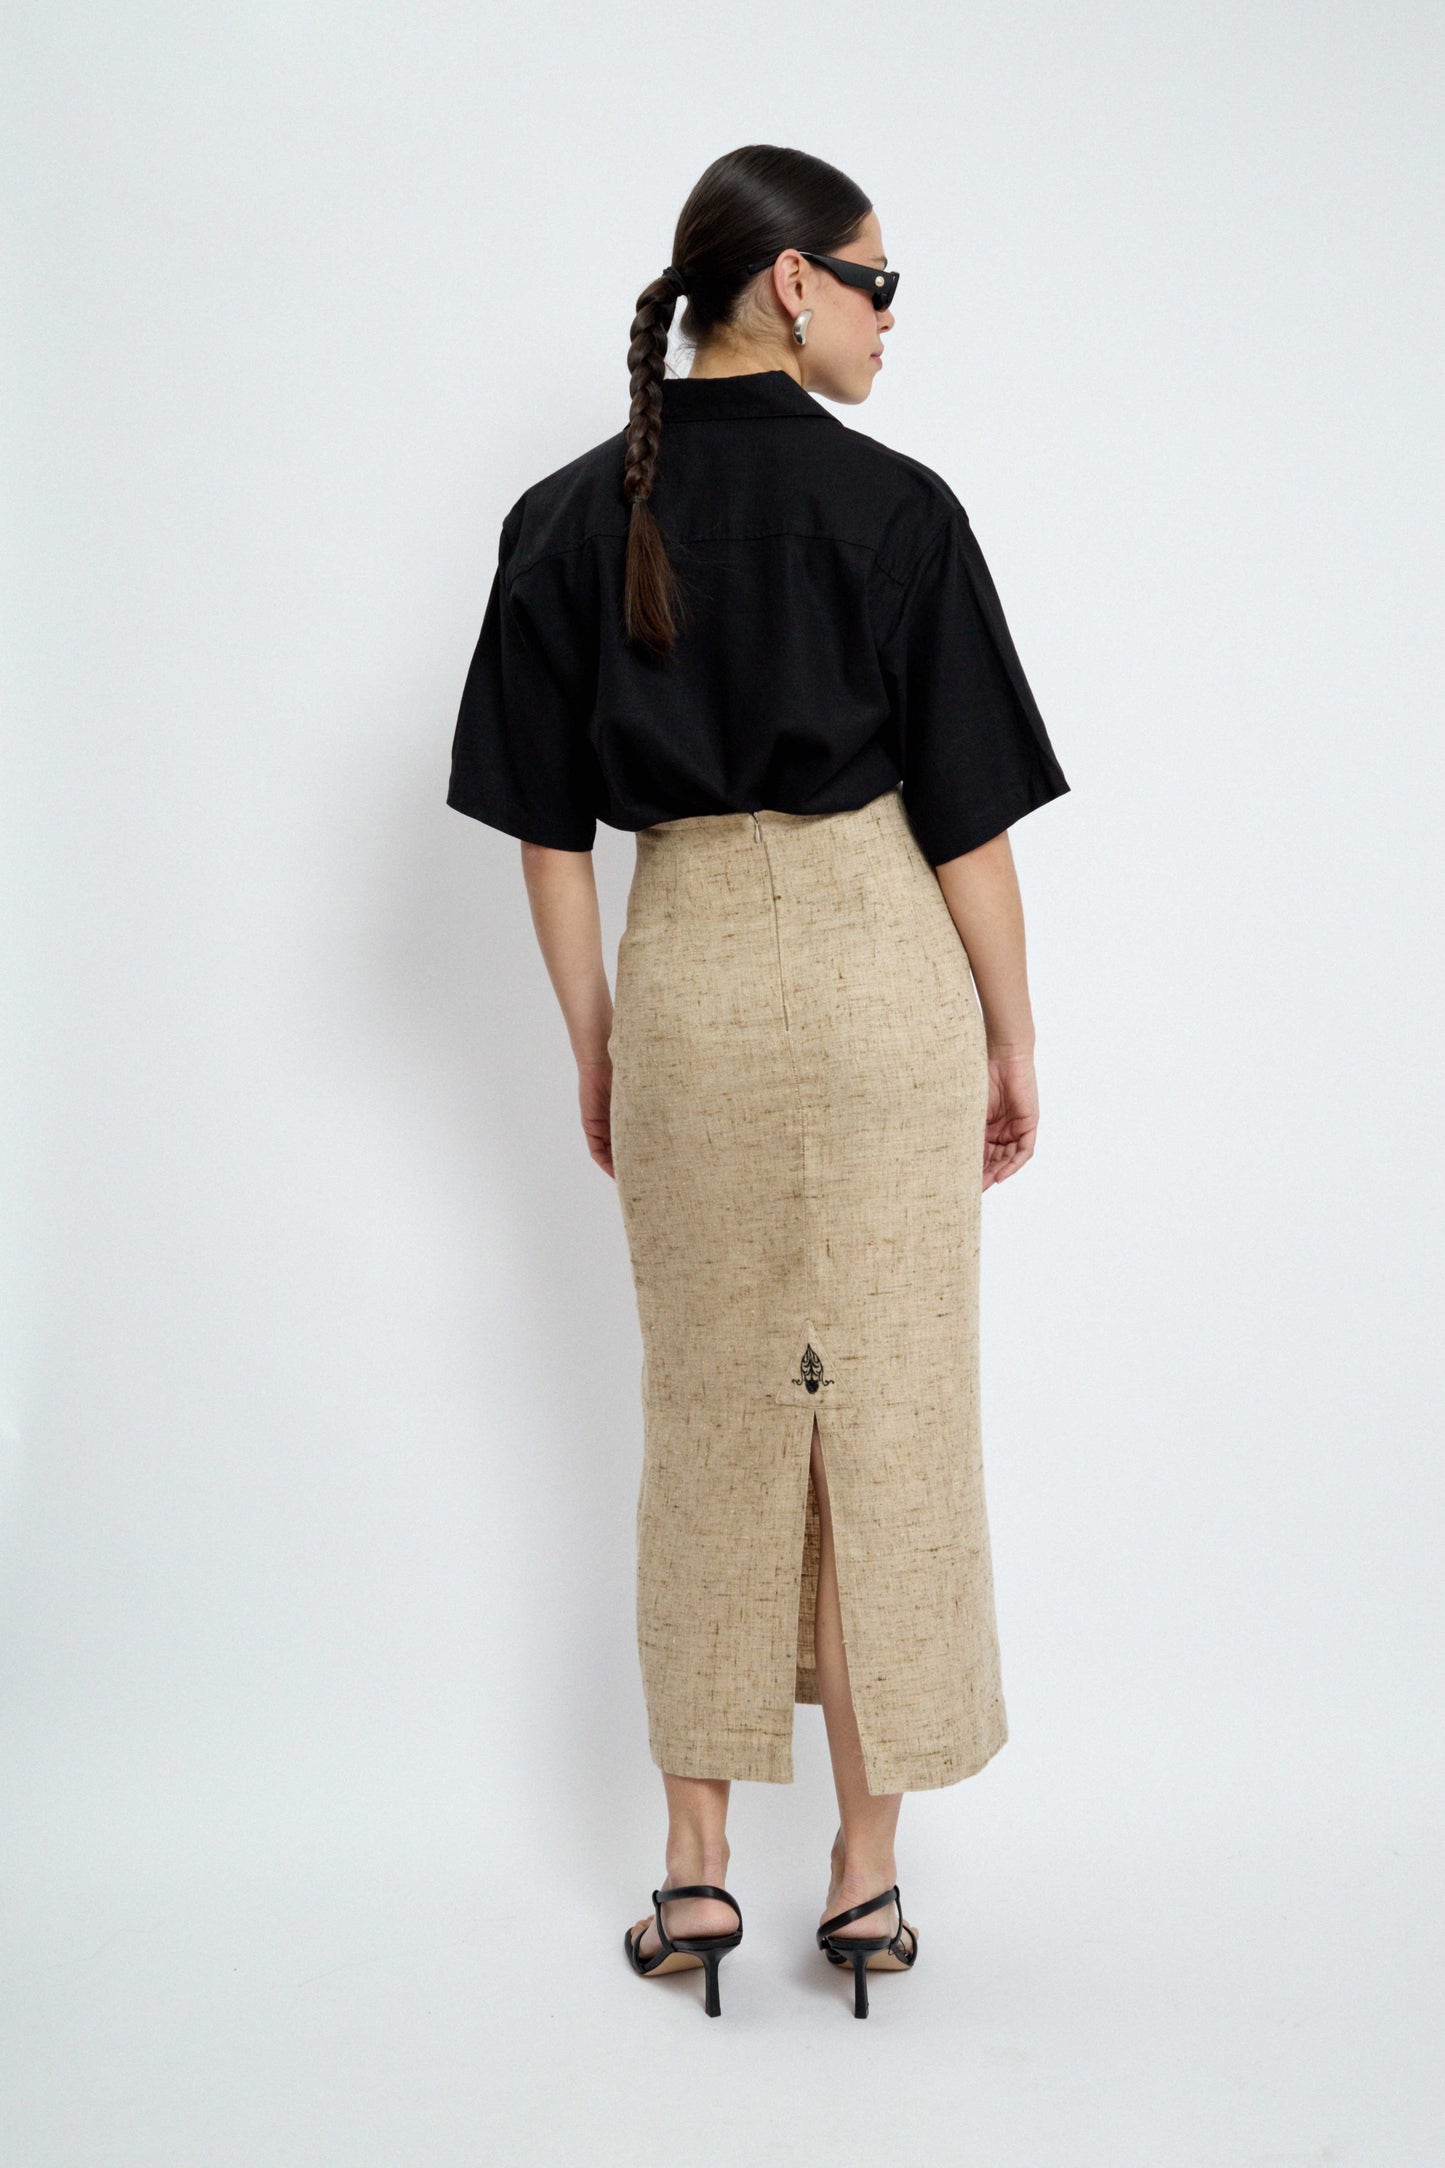 Maxi linen skirt by Sportalm